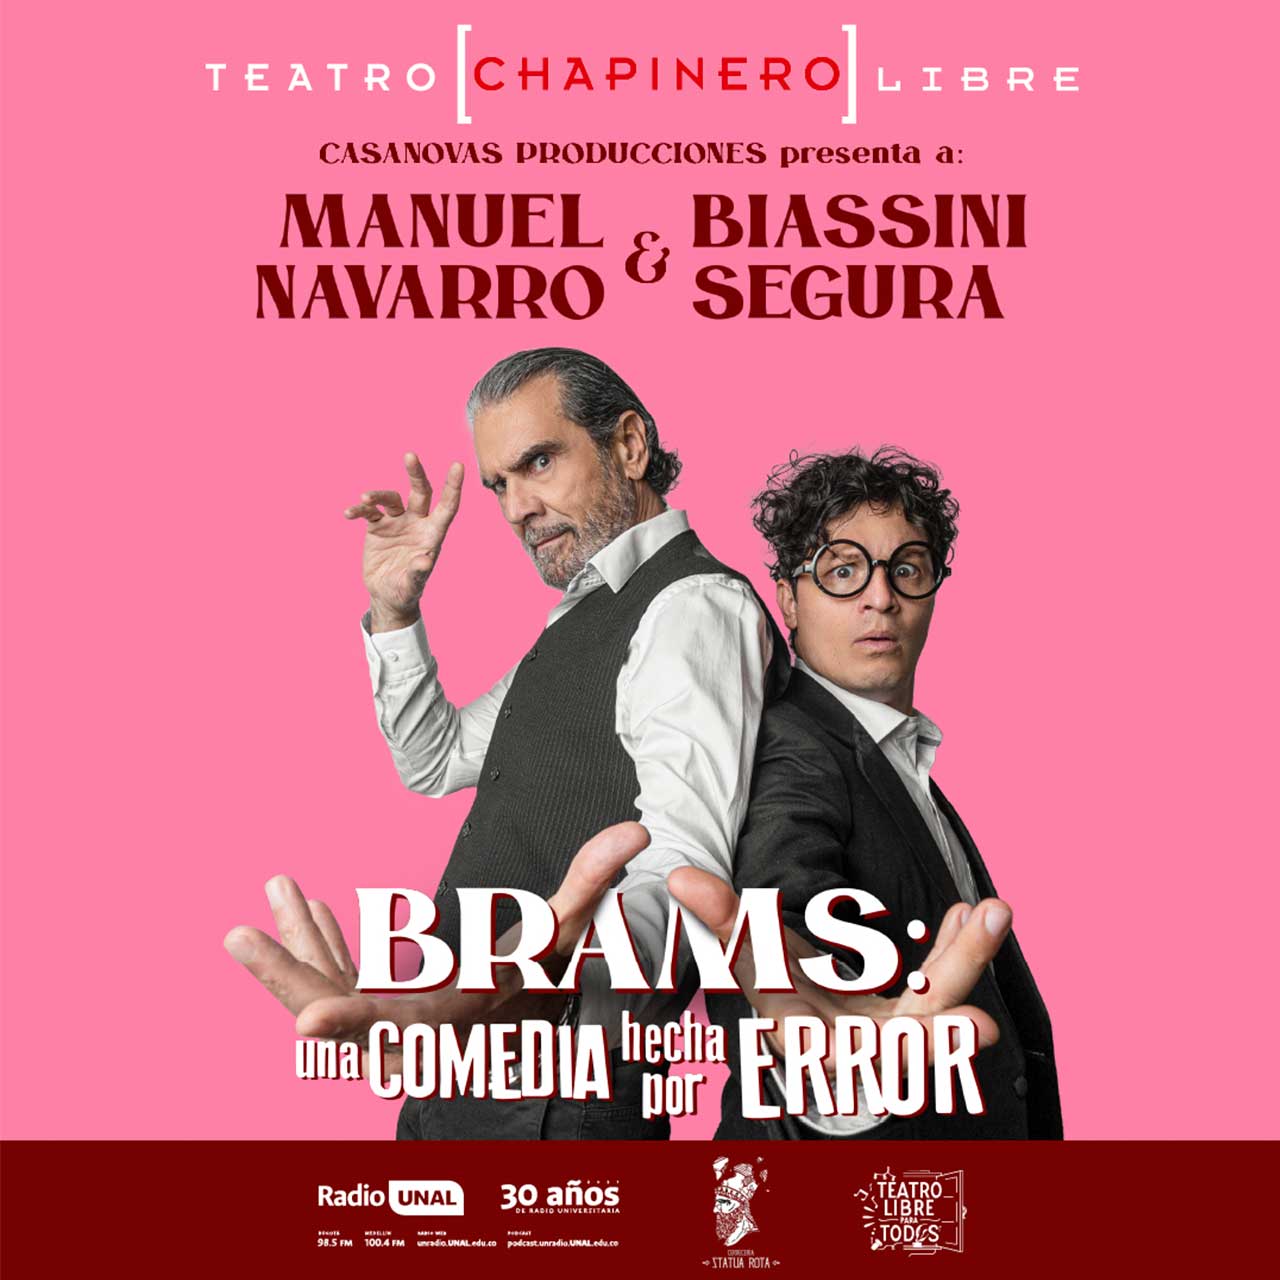 Teatro libre de Chapinero estrena la comedia Brams este 12 de enero